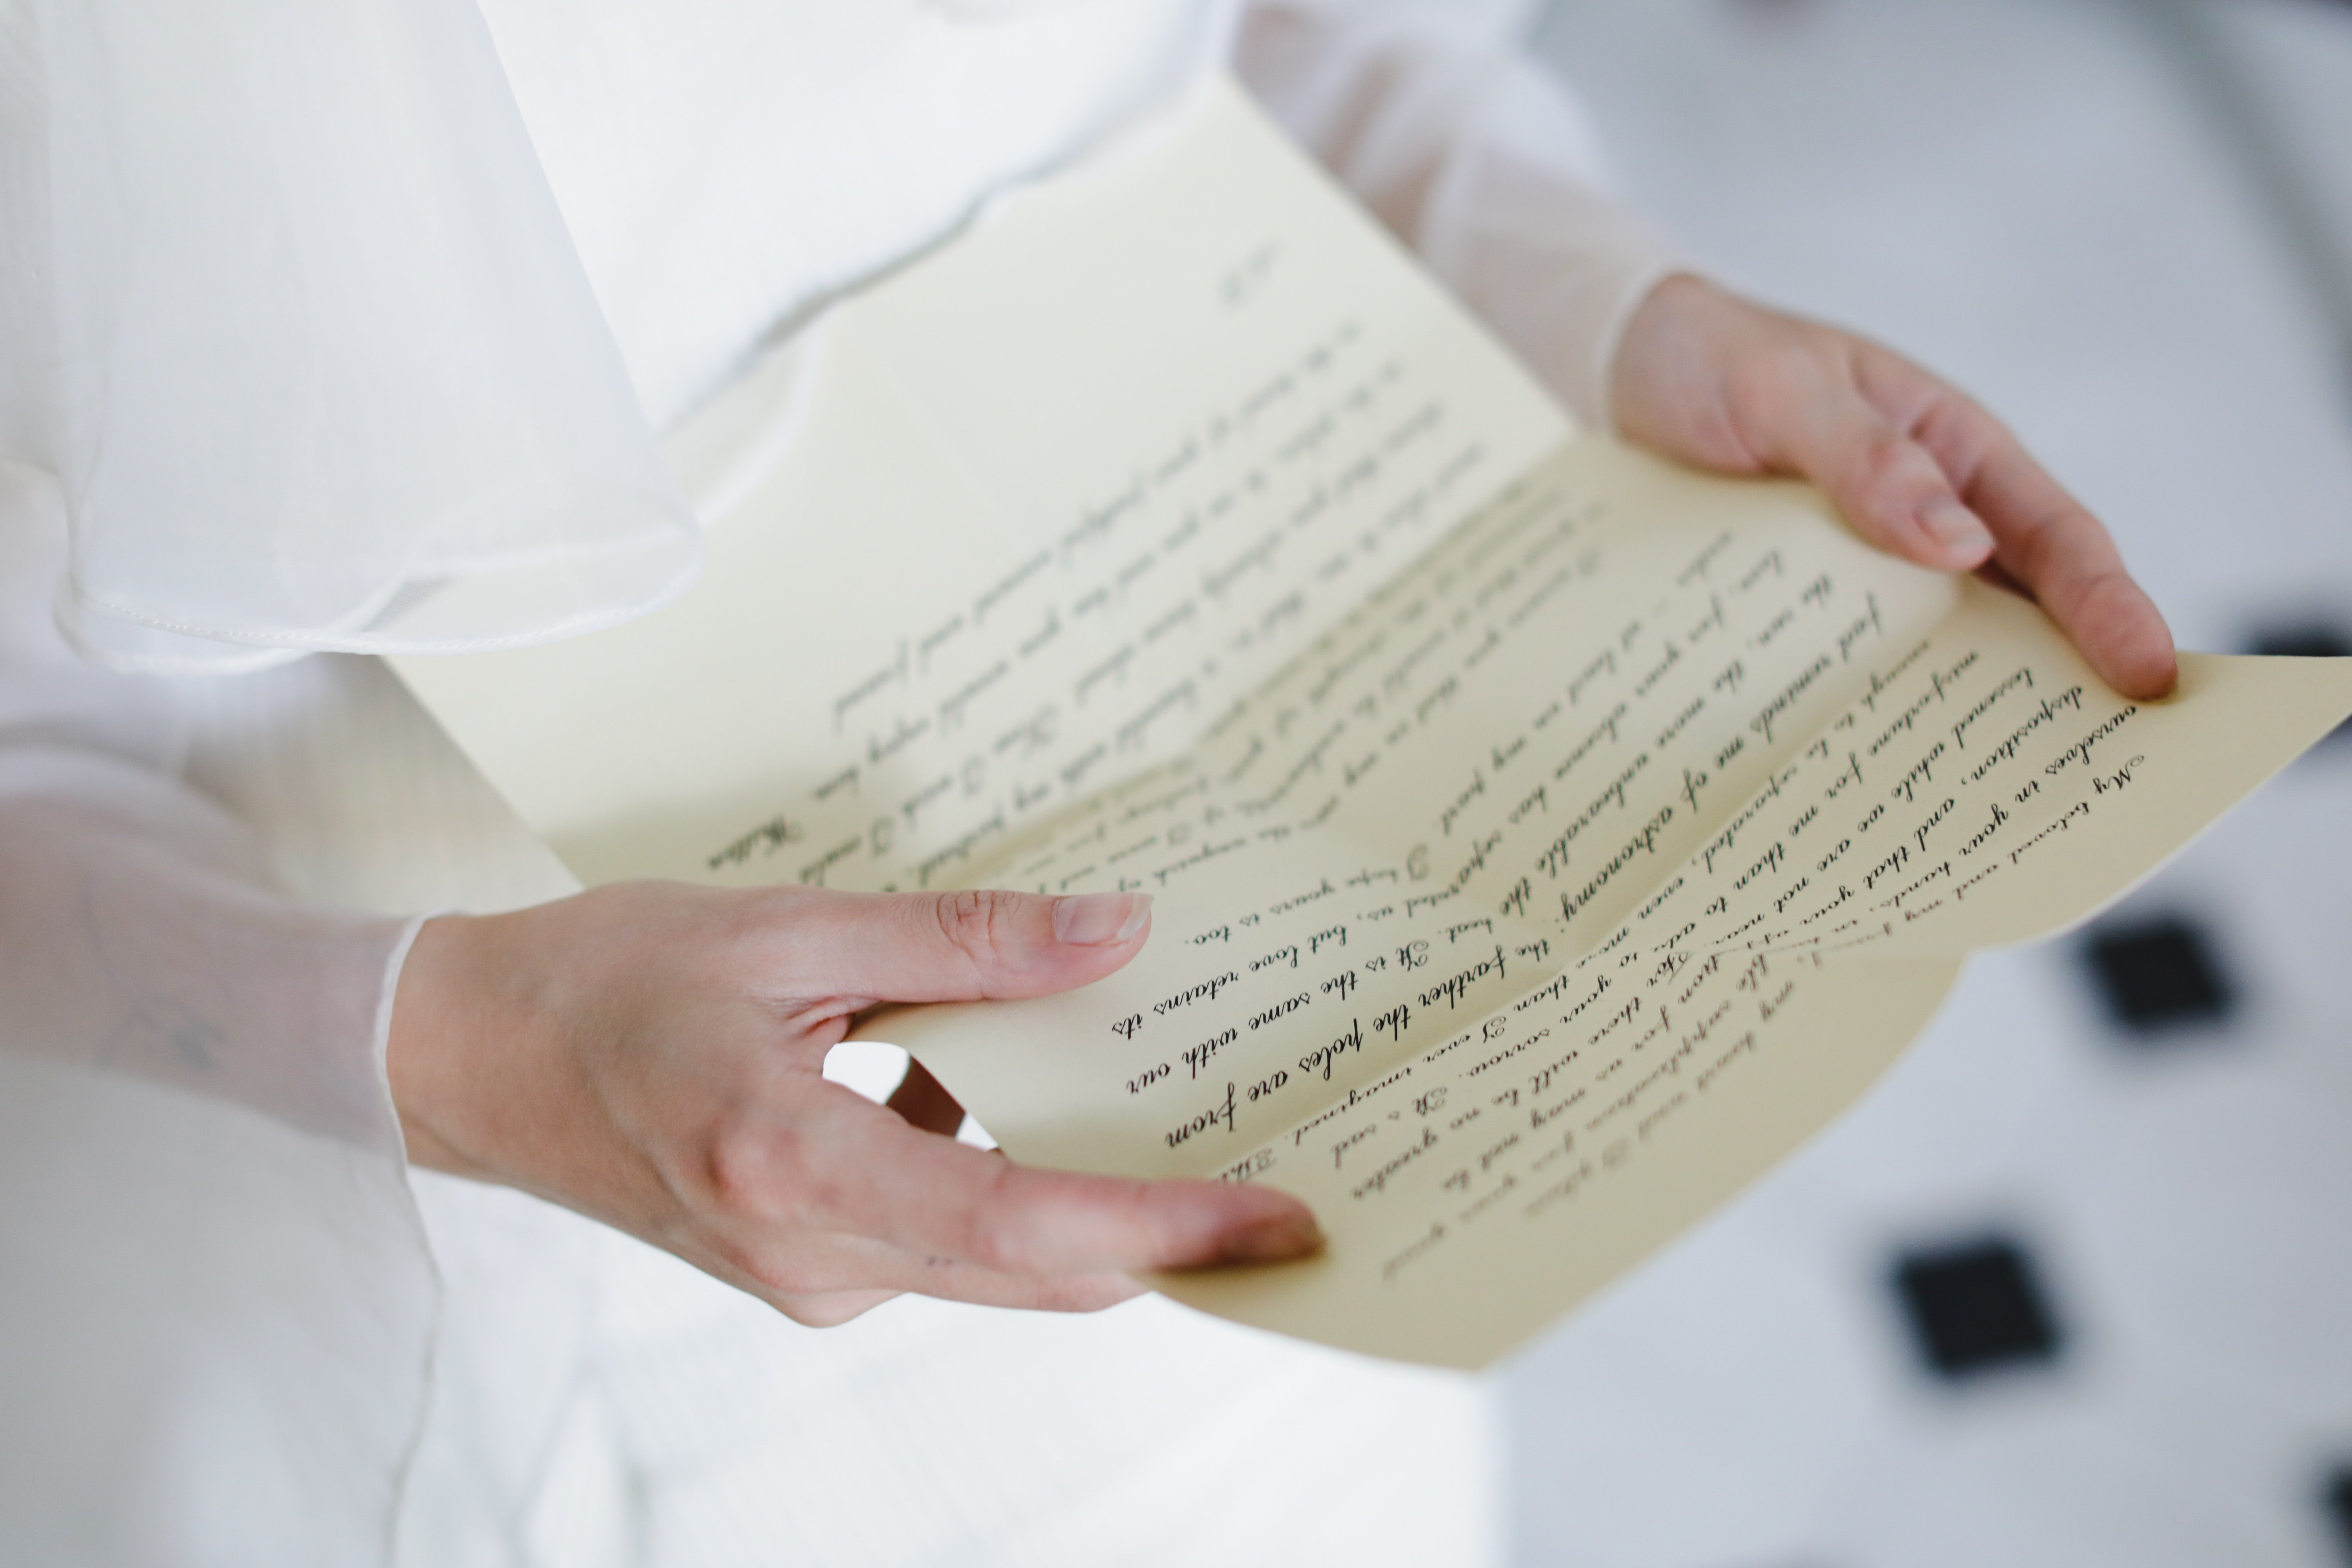 Una mujer lee una carta manuscrita. | Foto: Pexels